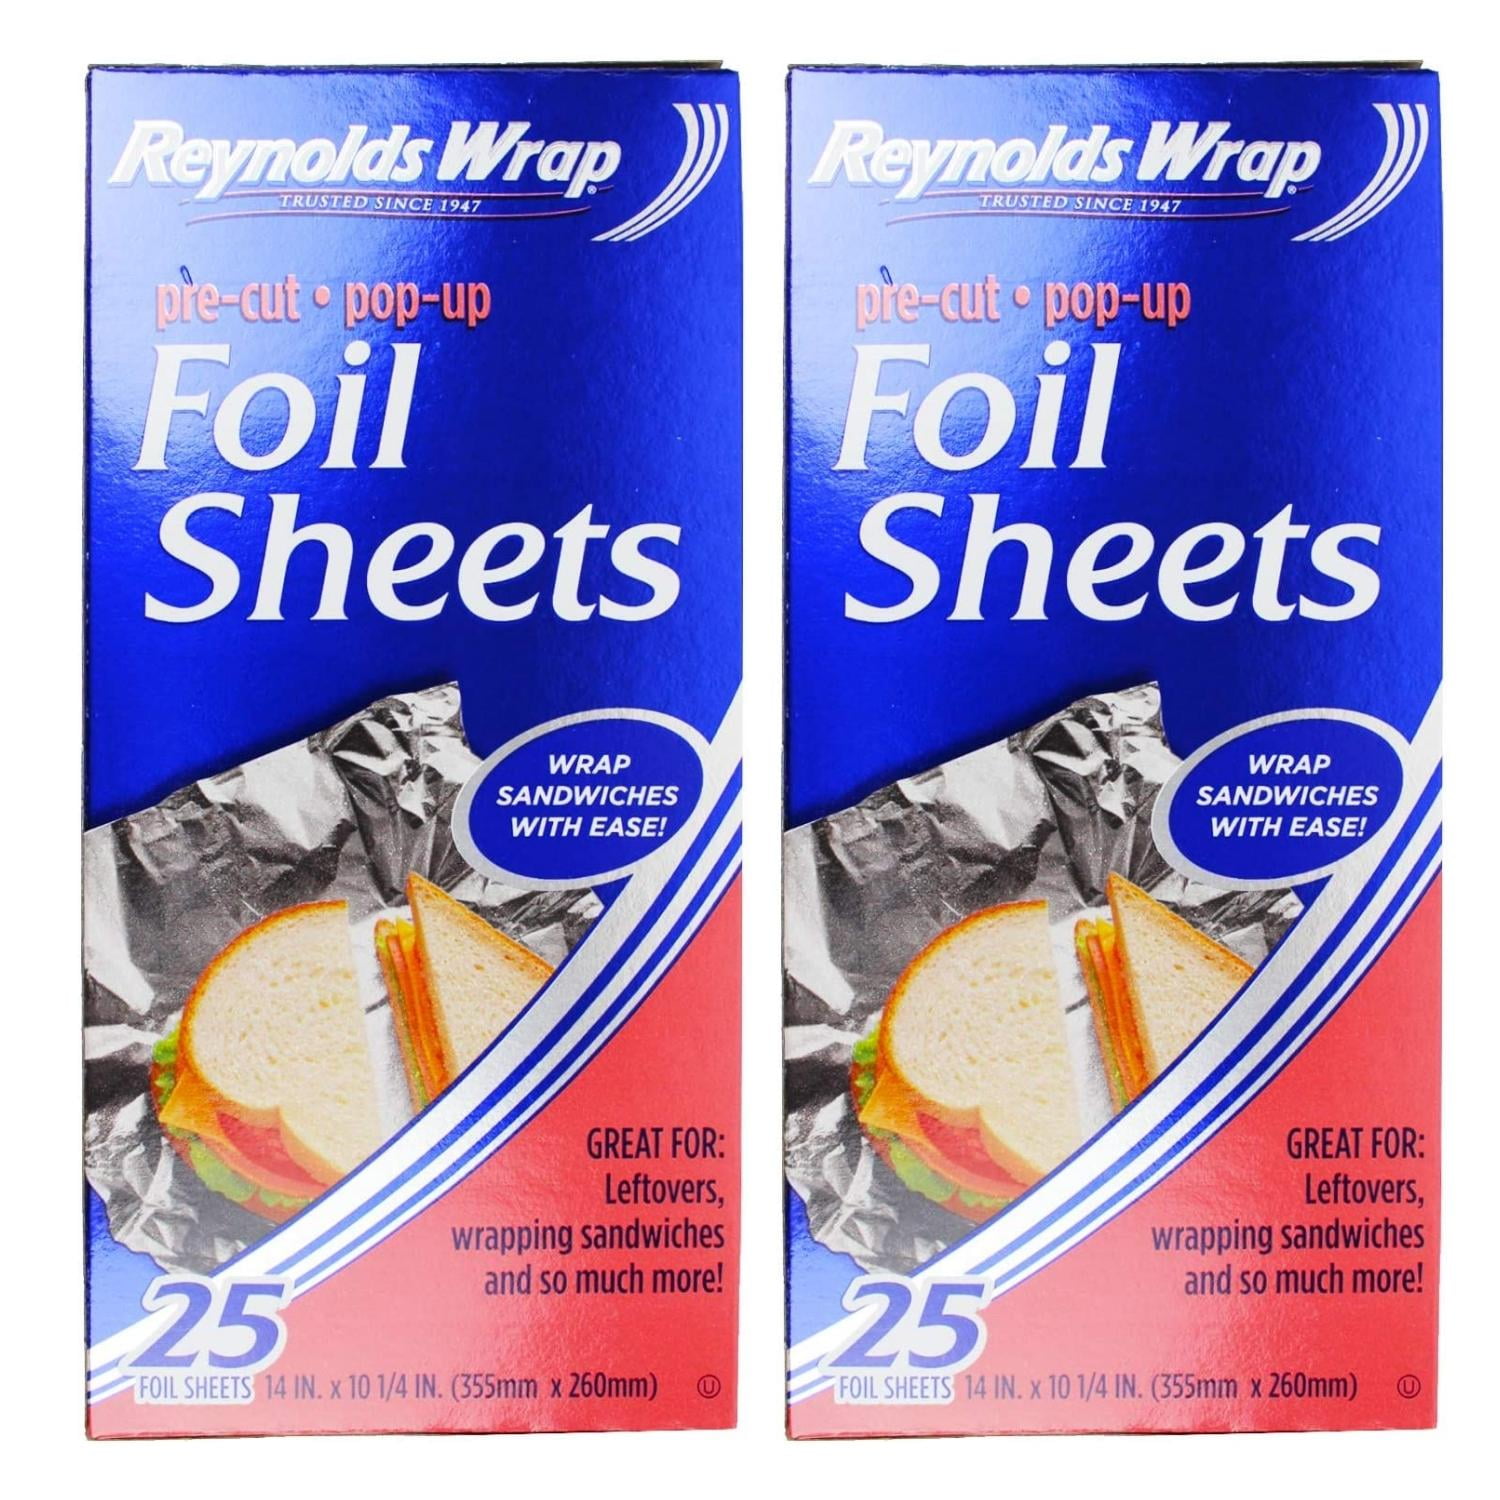 Reynold's Wrap Aluminum Pre-cut Pop-up Foil Sheets 14”x10 ¼” 50 Ct/2 box  NEW